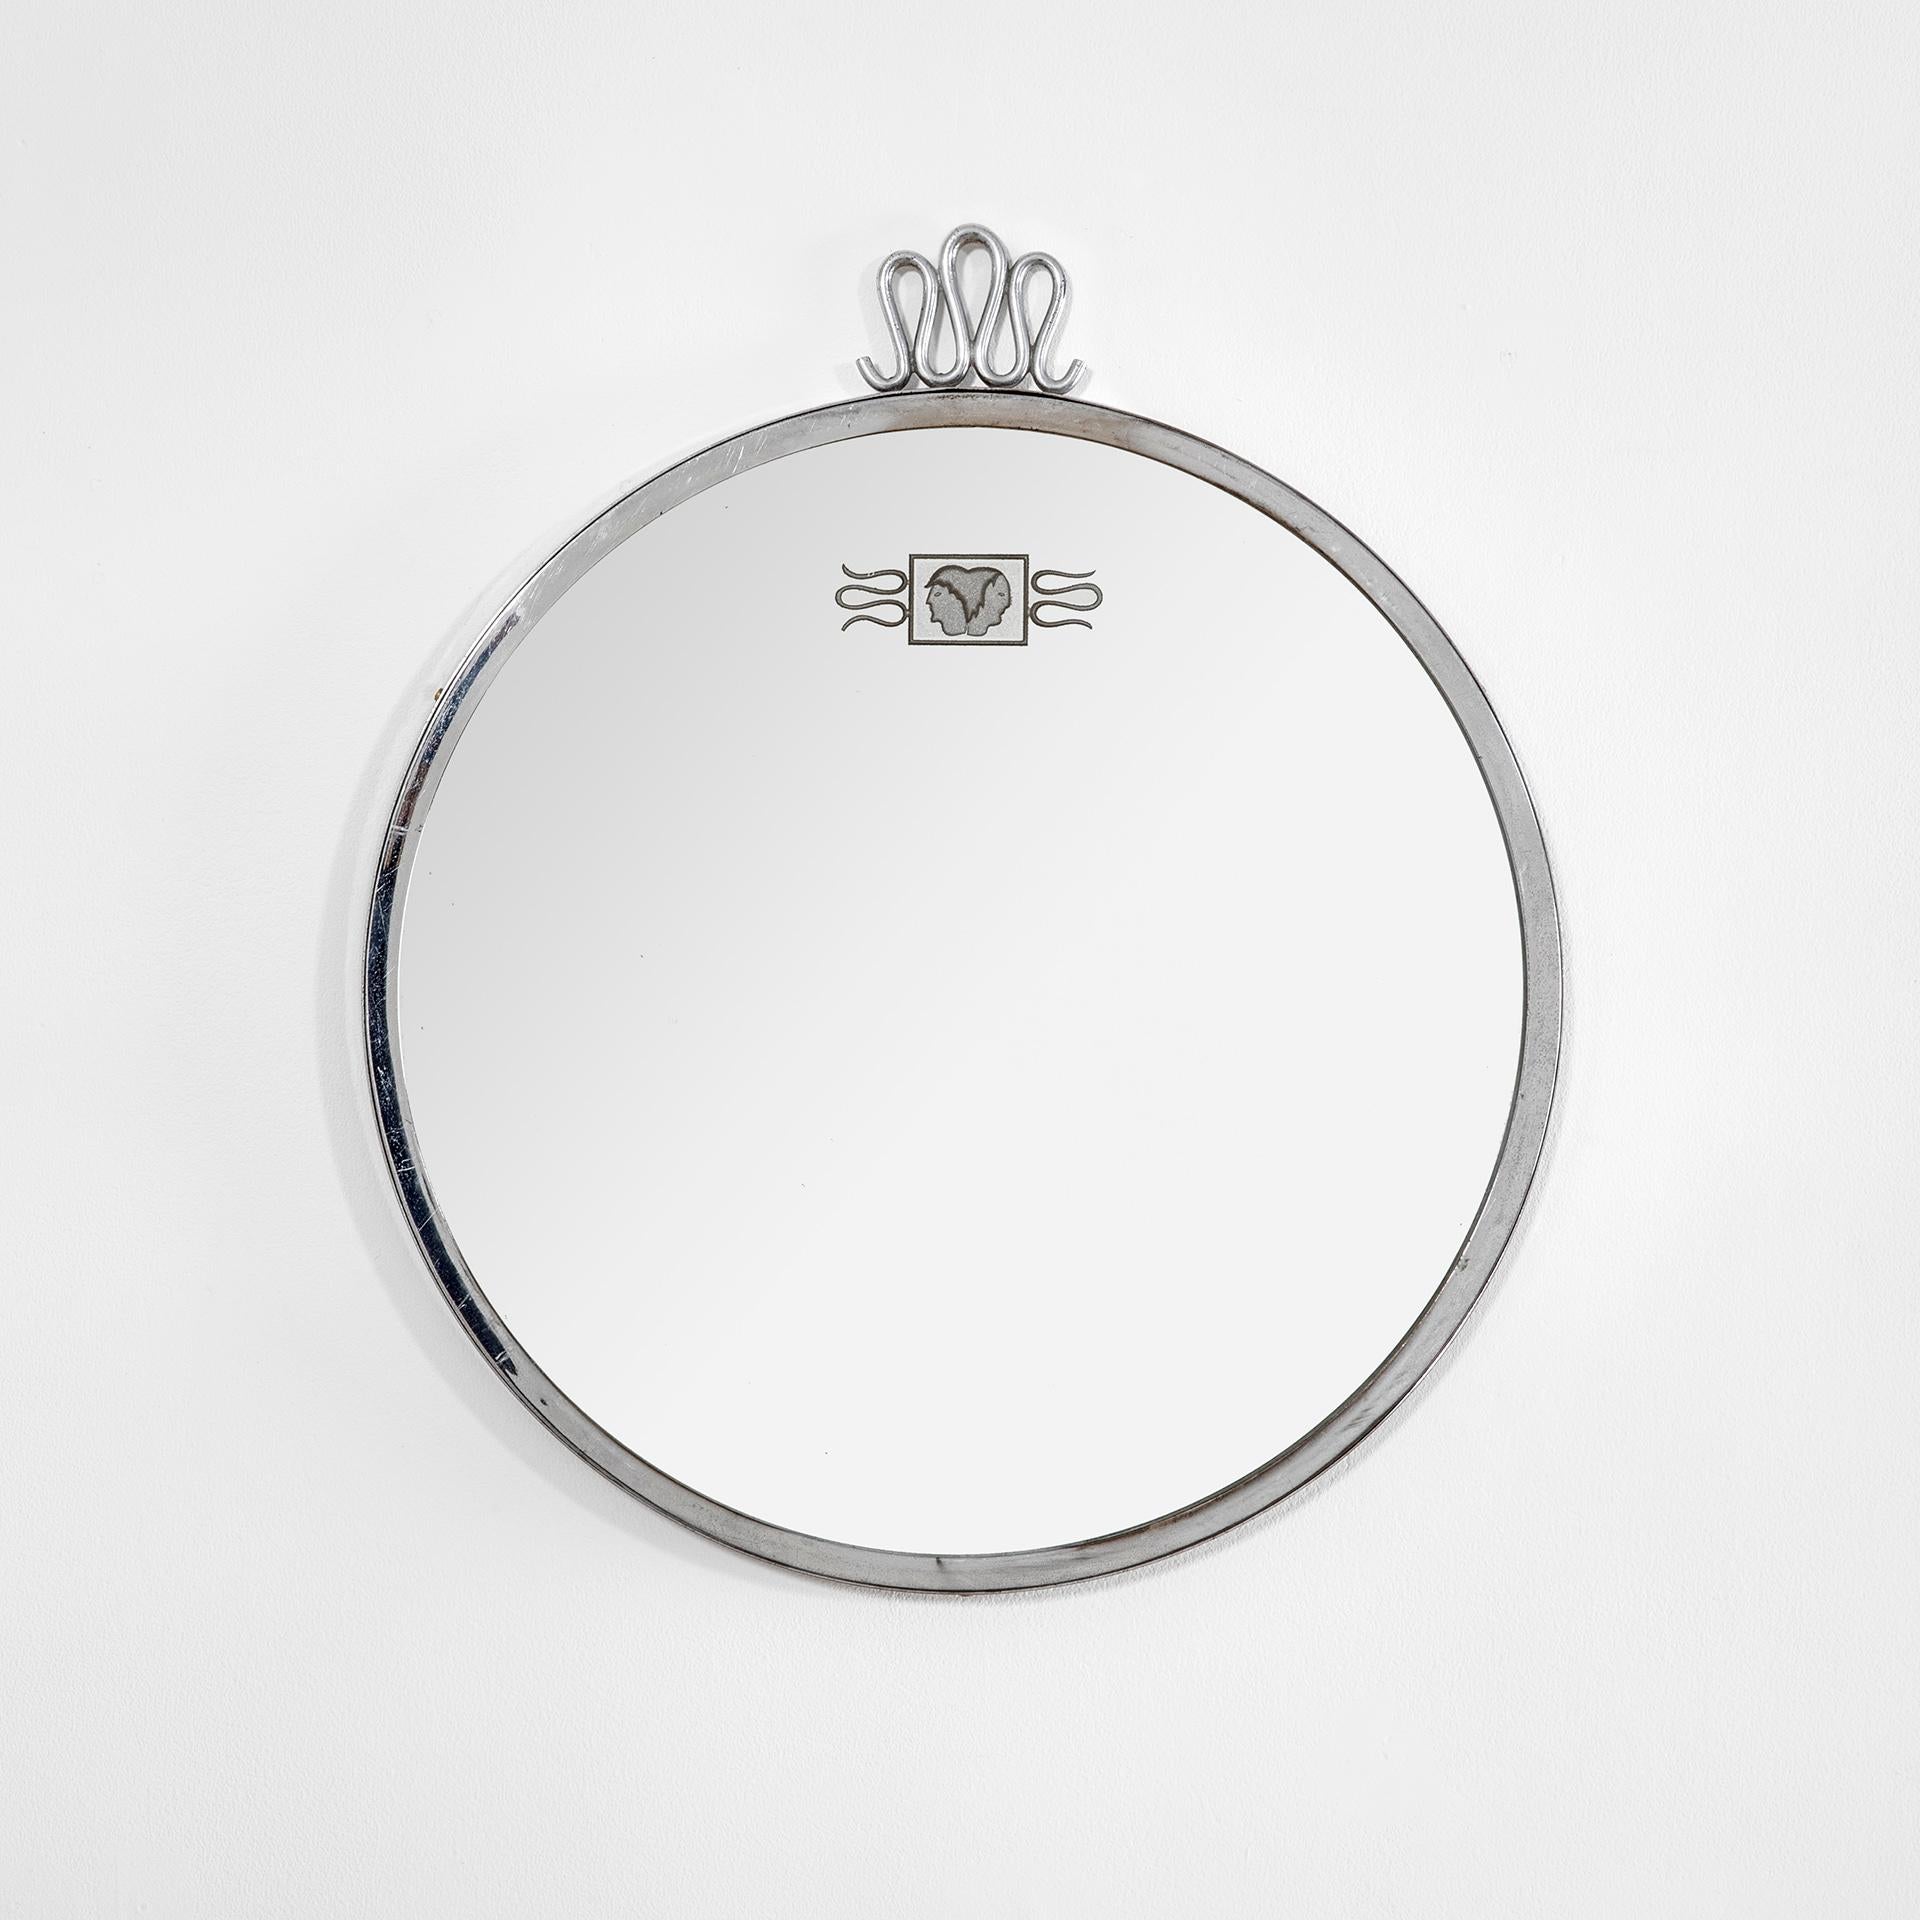 Magnifique miroir circulaire conçu dans les années 30 par Gio Ponti pour le producteur Luigi Fontana.
Le miroir a une structure en laiton nickelé, sur le miroir il y a la marque du producteur.
Très bon état, entièrement d'origine.
Publié dans :